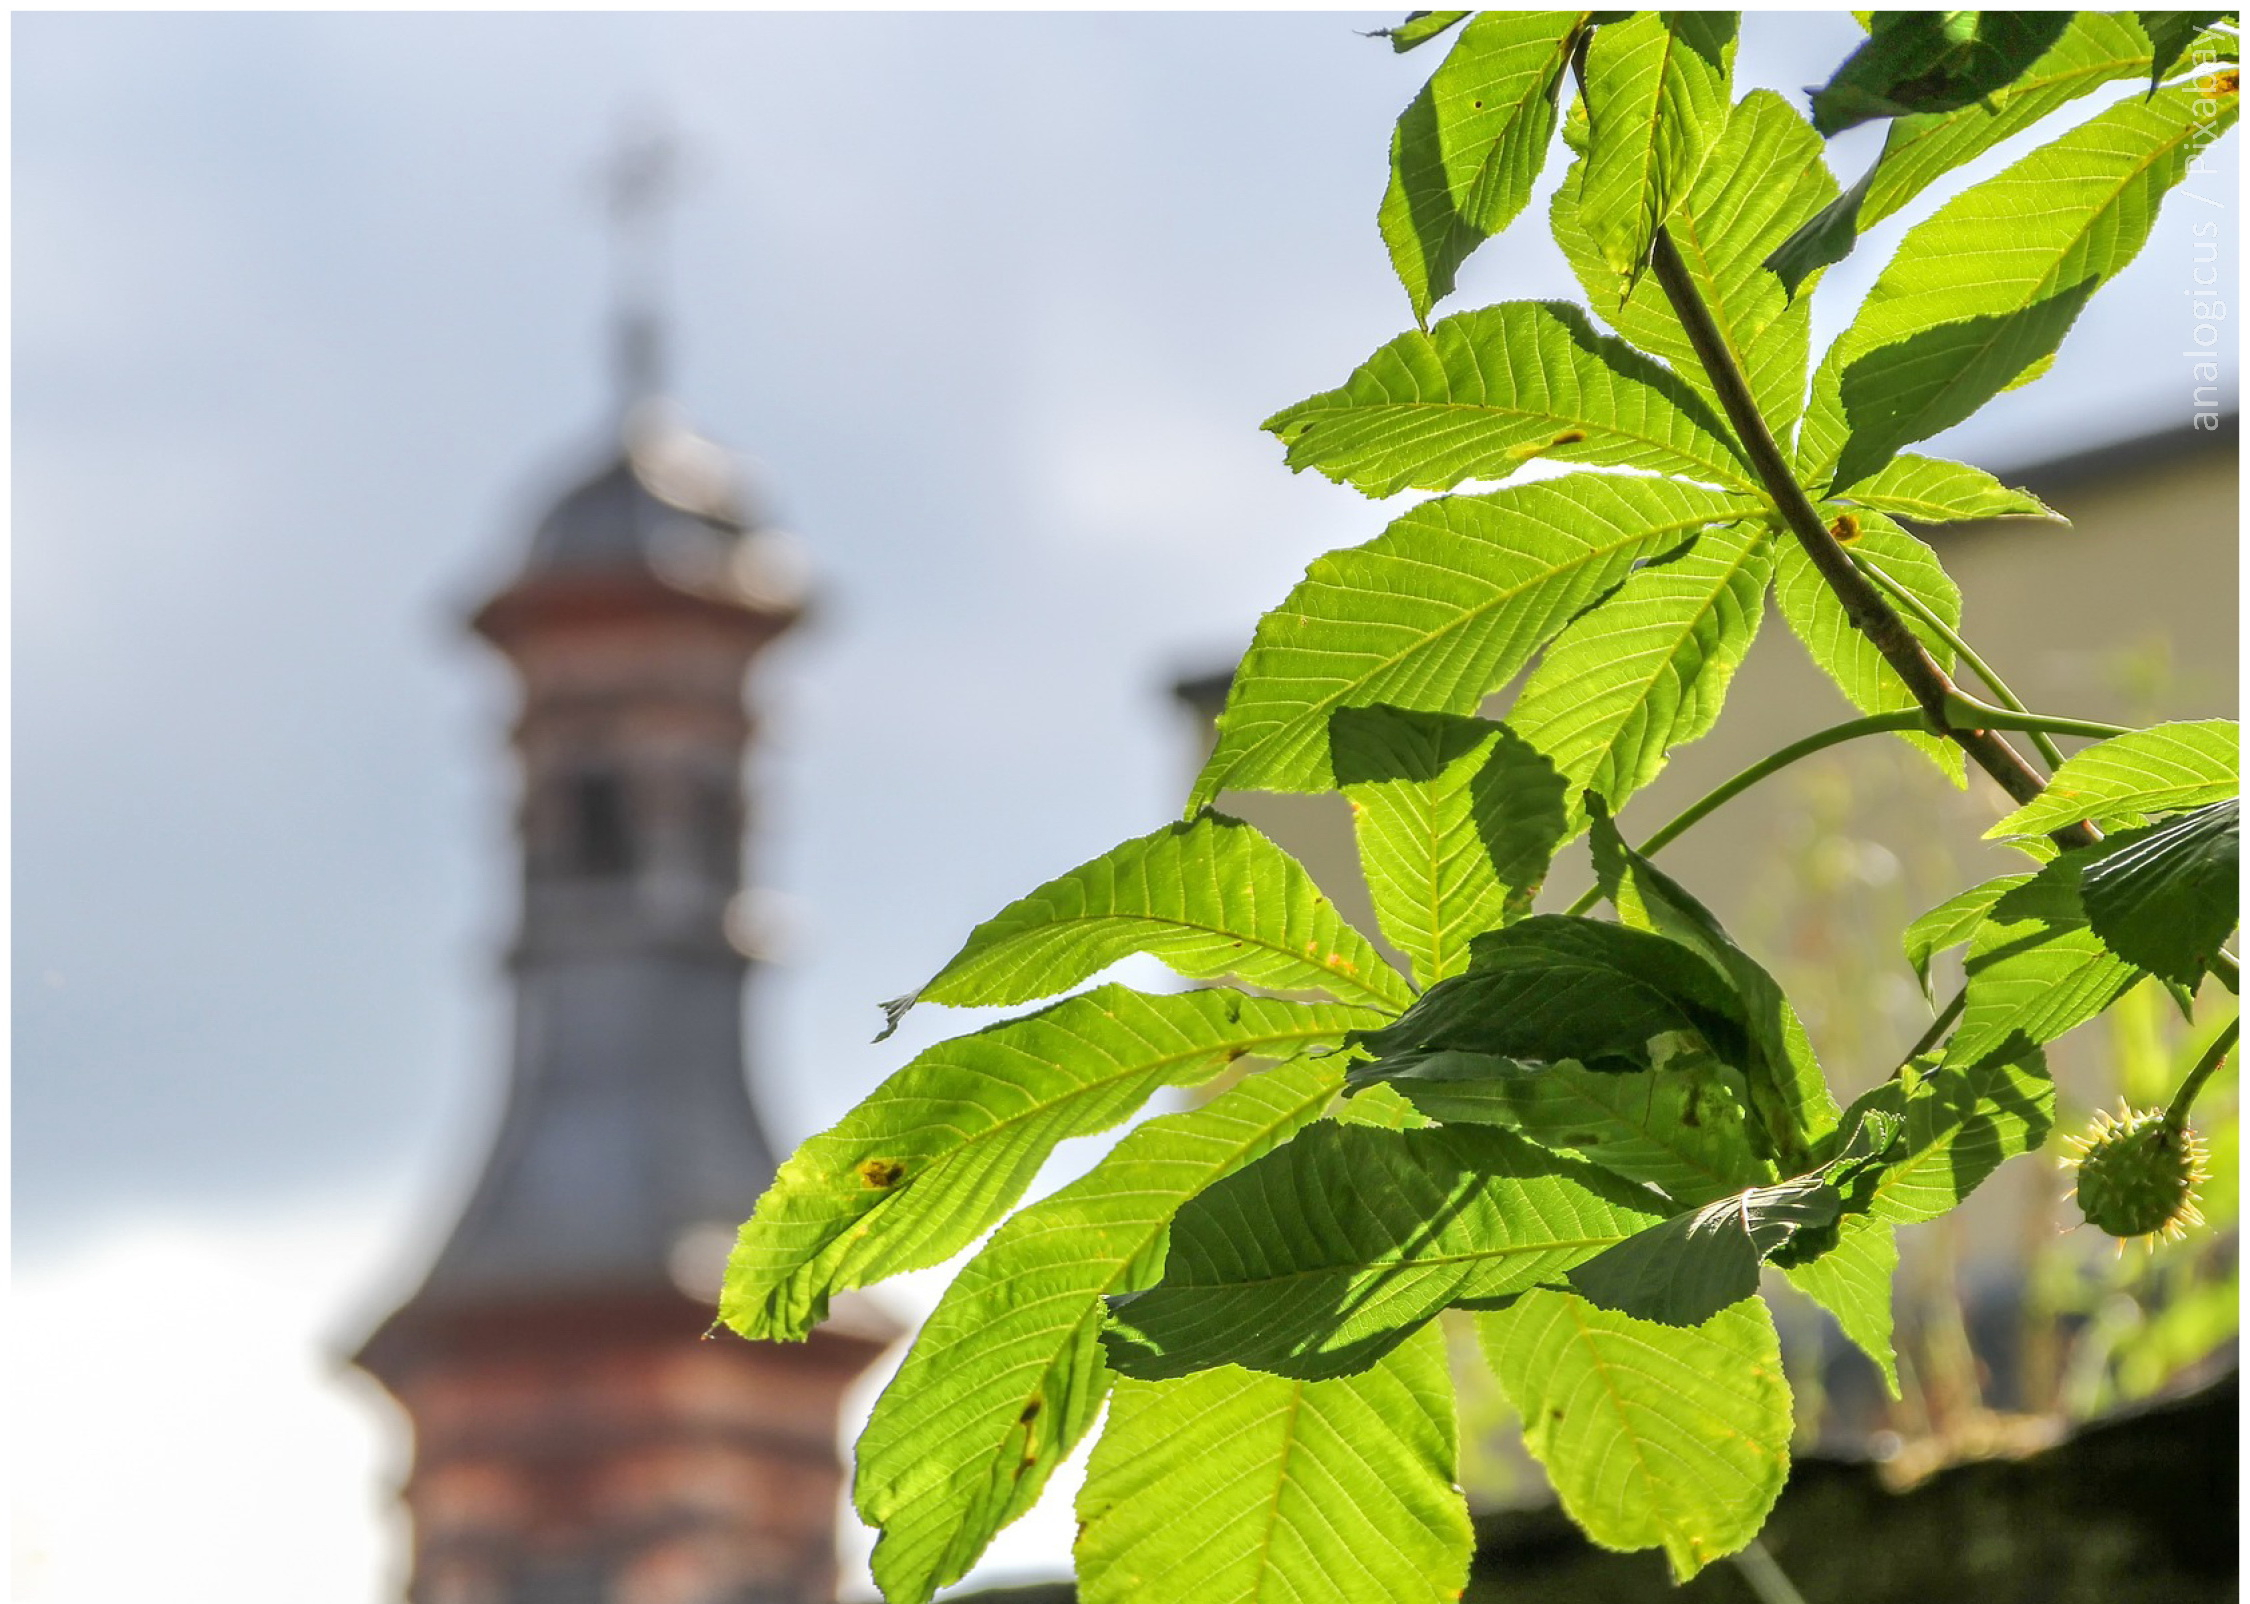 Im Vordergrund sind die Blätter eines Baumes zu sehen, im Hintergrund ein Kirchturm. Darunter steht "Klimaschutz rund um den Kirchturm. Online-Fortbildung für Engagierte".